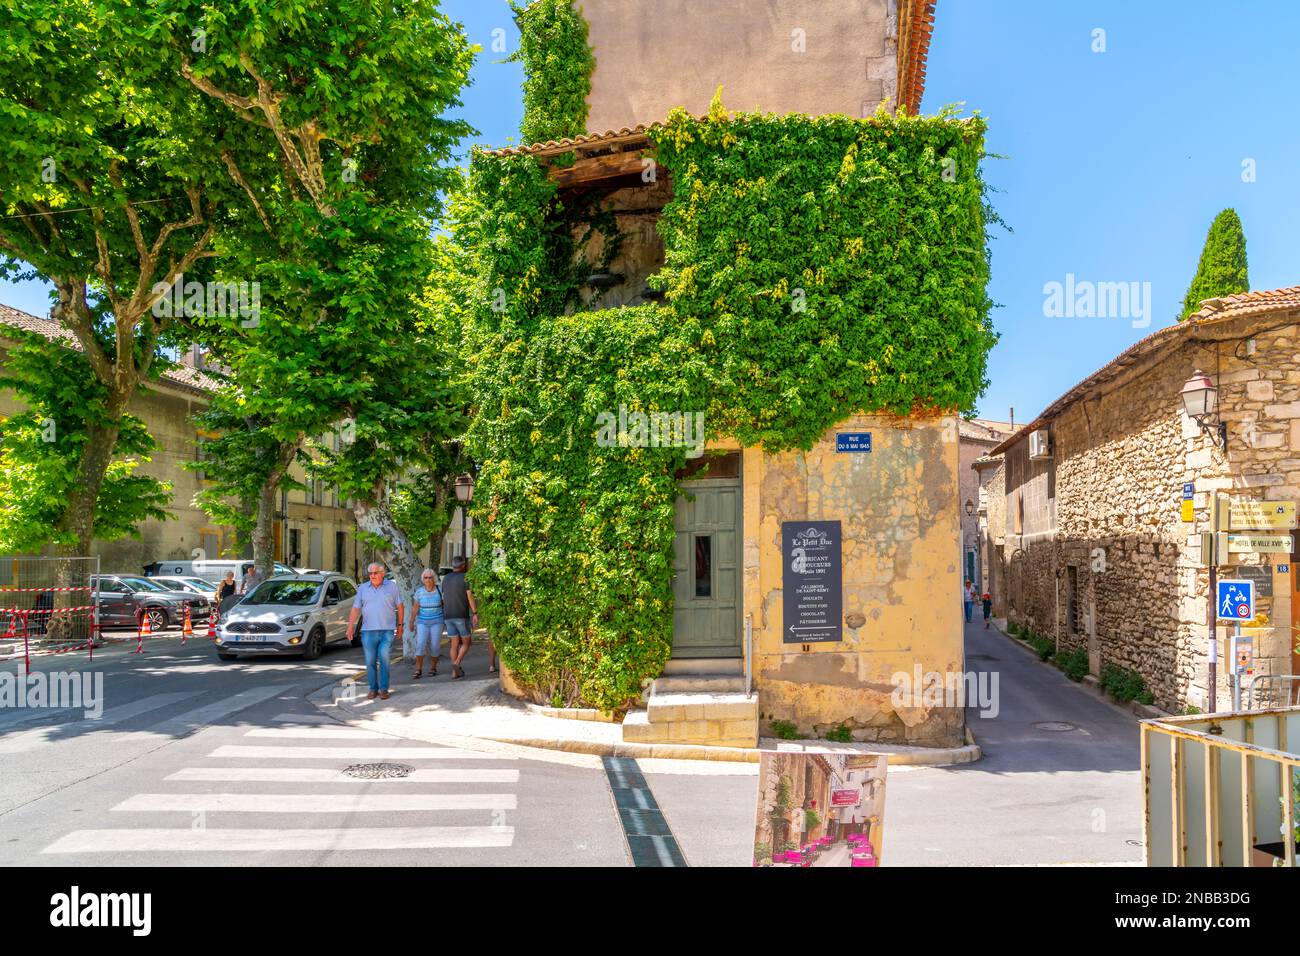 Un bâtiment historique couvert de lierre dans la vieille ville médiévale de Saint-Rémy dans la région Provence Côte d'Azur du Sud de la France. Banque D'Images